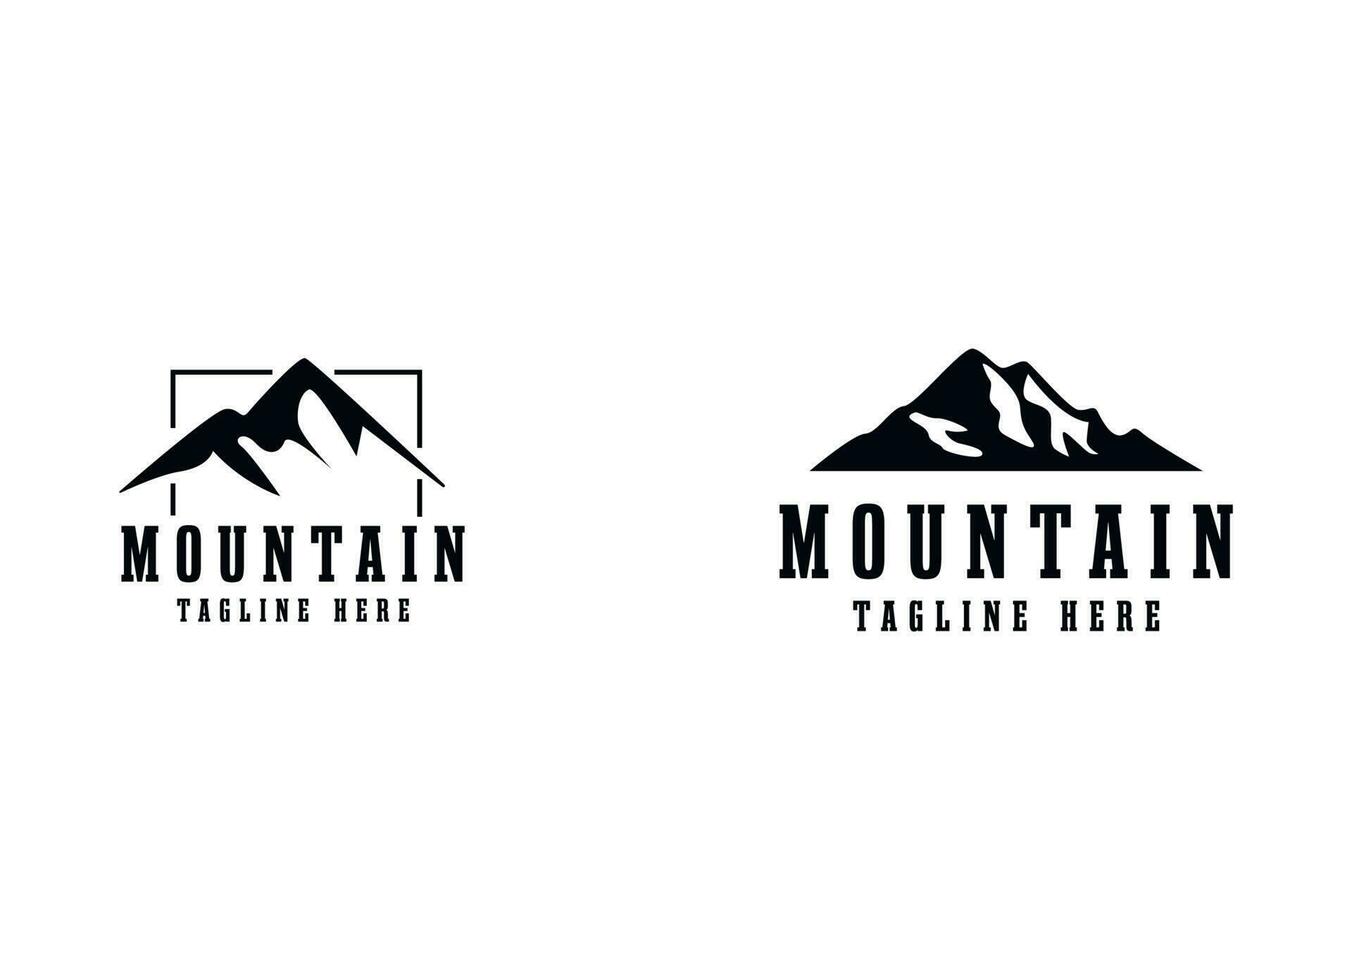 nero montagna logo design modello vettore